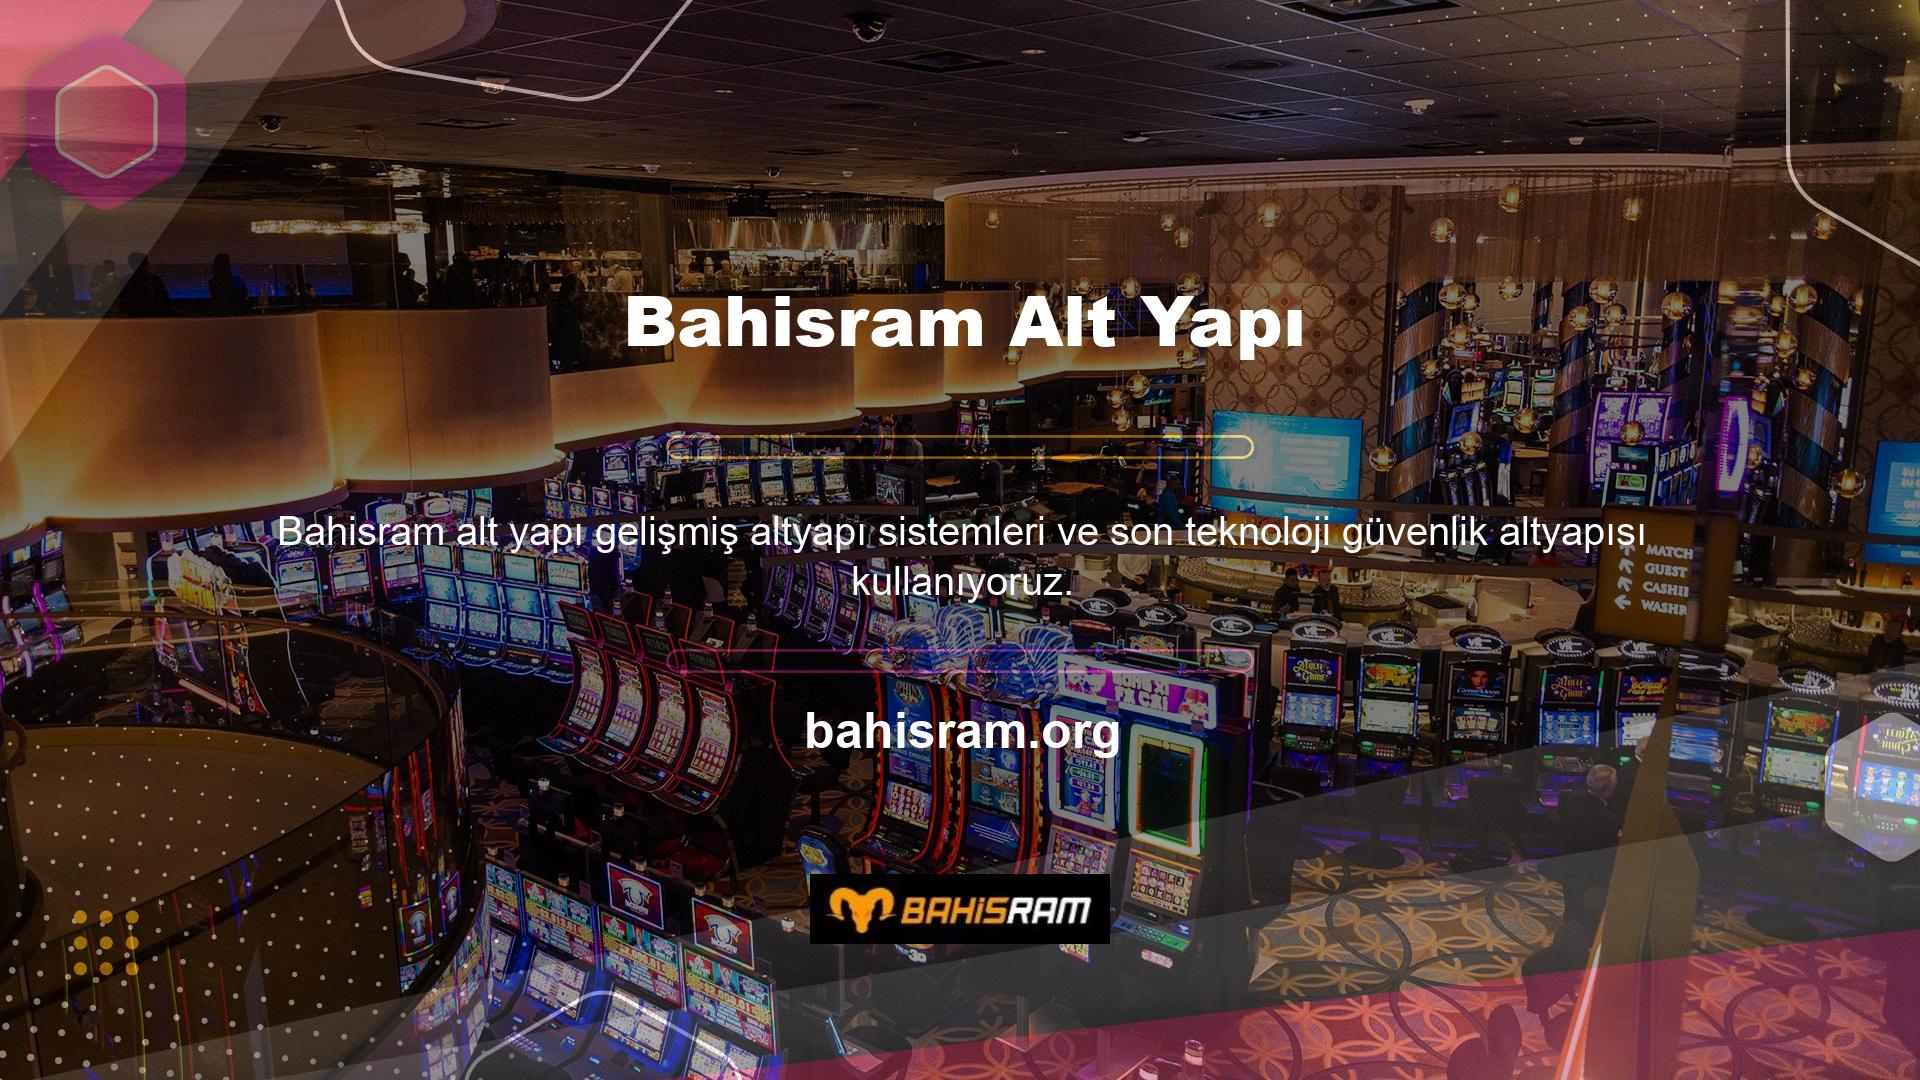 Bahisram sitesinde oyun hizmeti veren firmalar aynı zamanda dünyaca ünlü ve kaliteli firmalardır